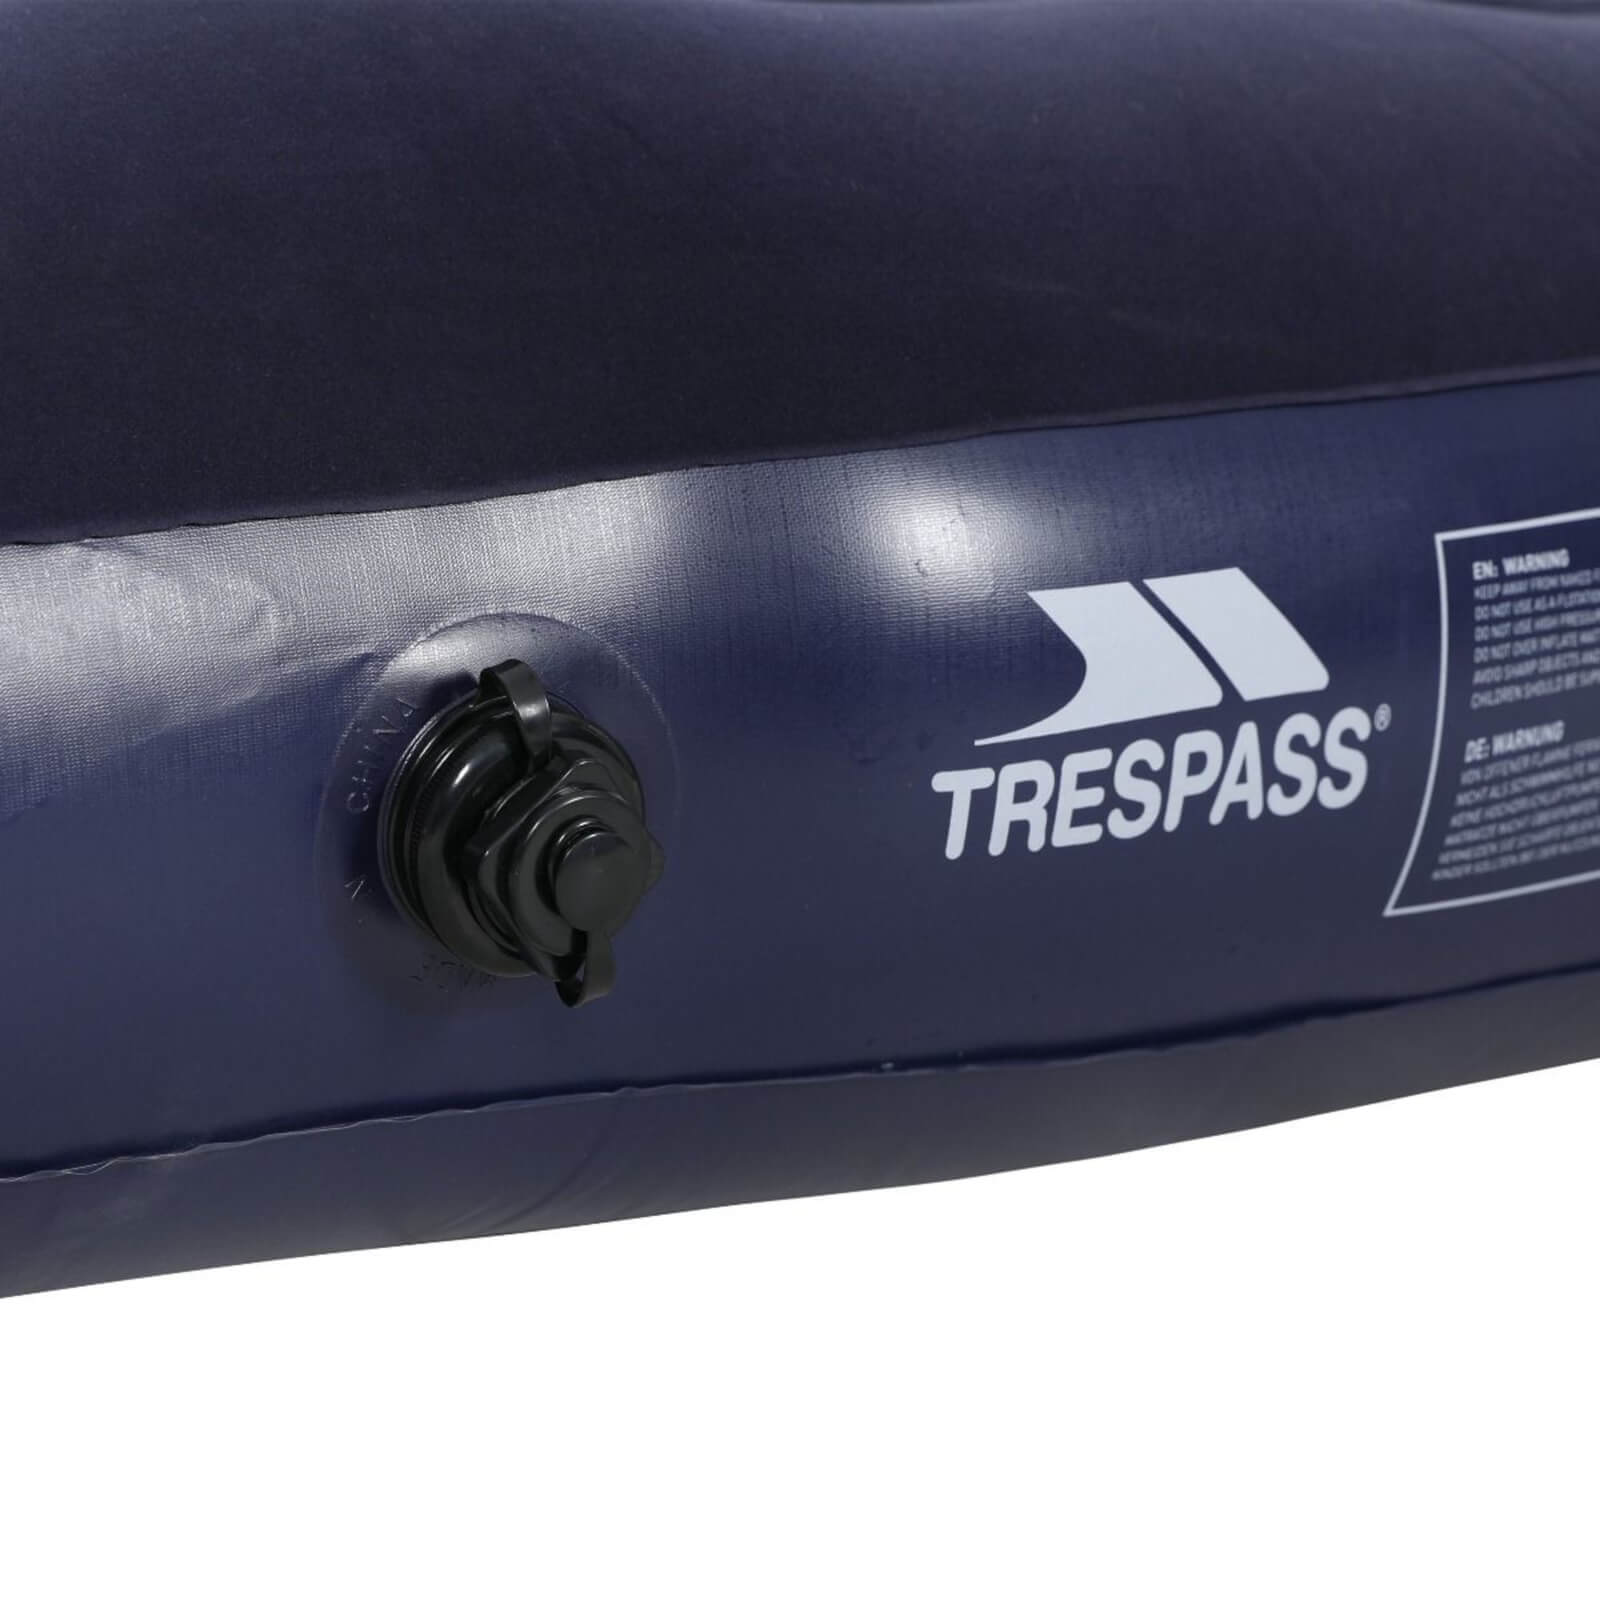 Trespass Duoblimp Double Air Mattress Camping Sleeping Mat Alternate 1